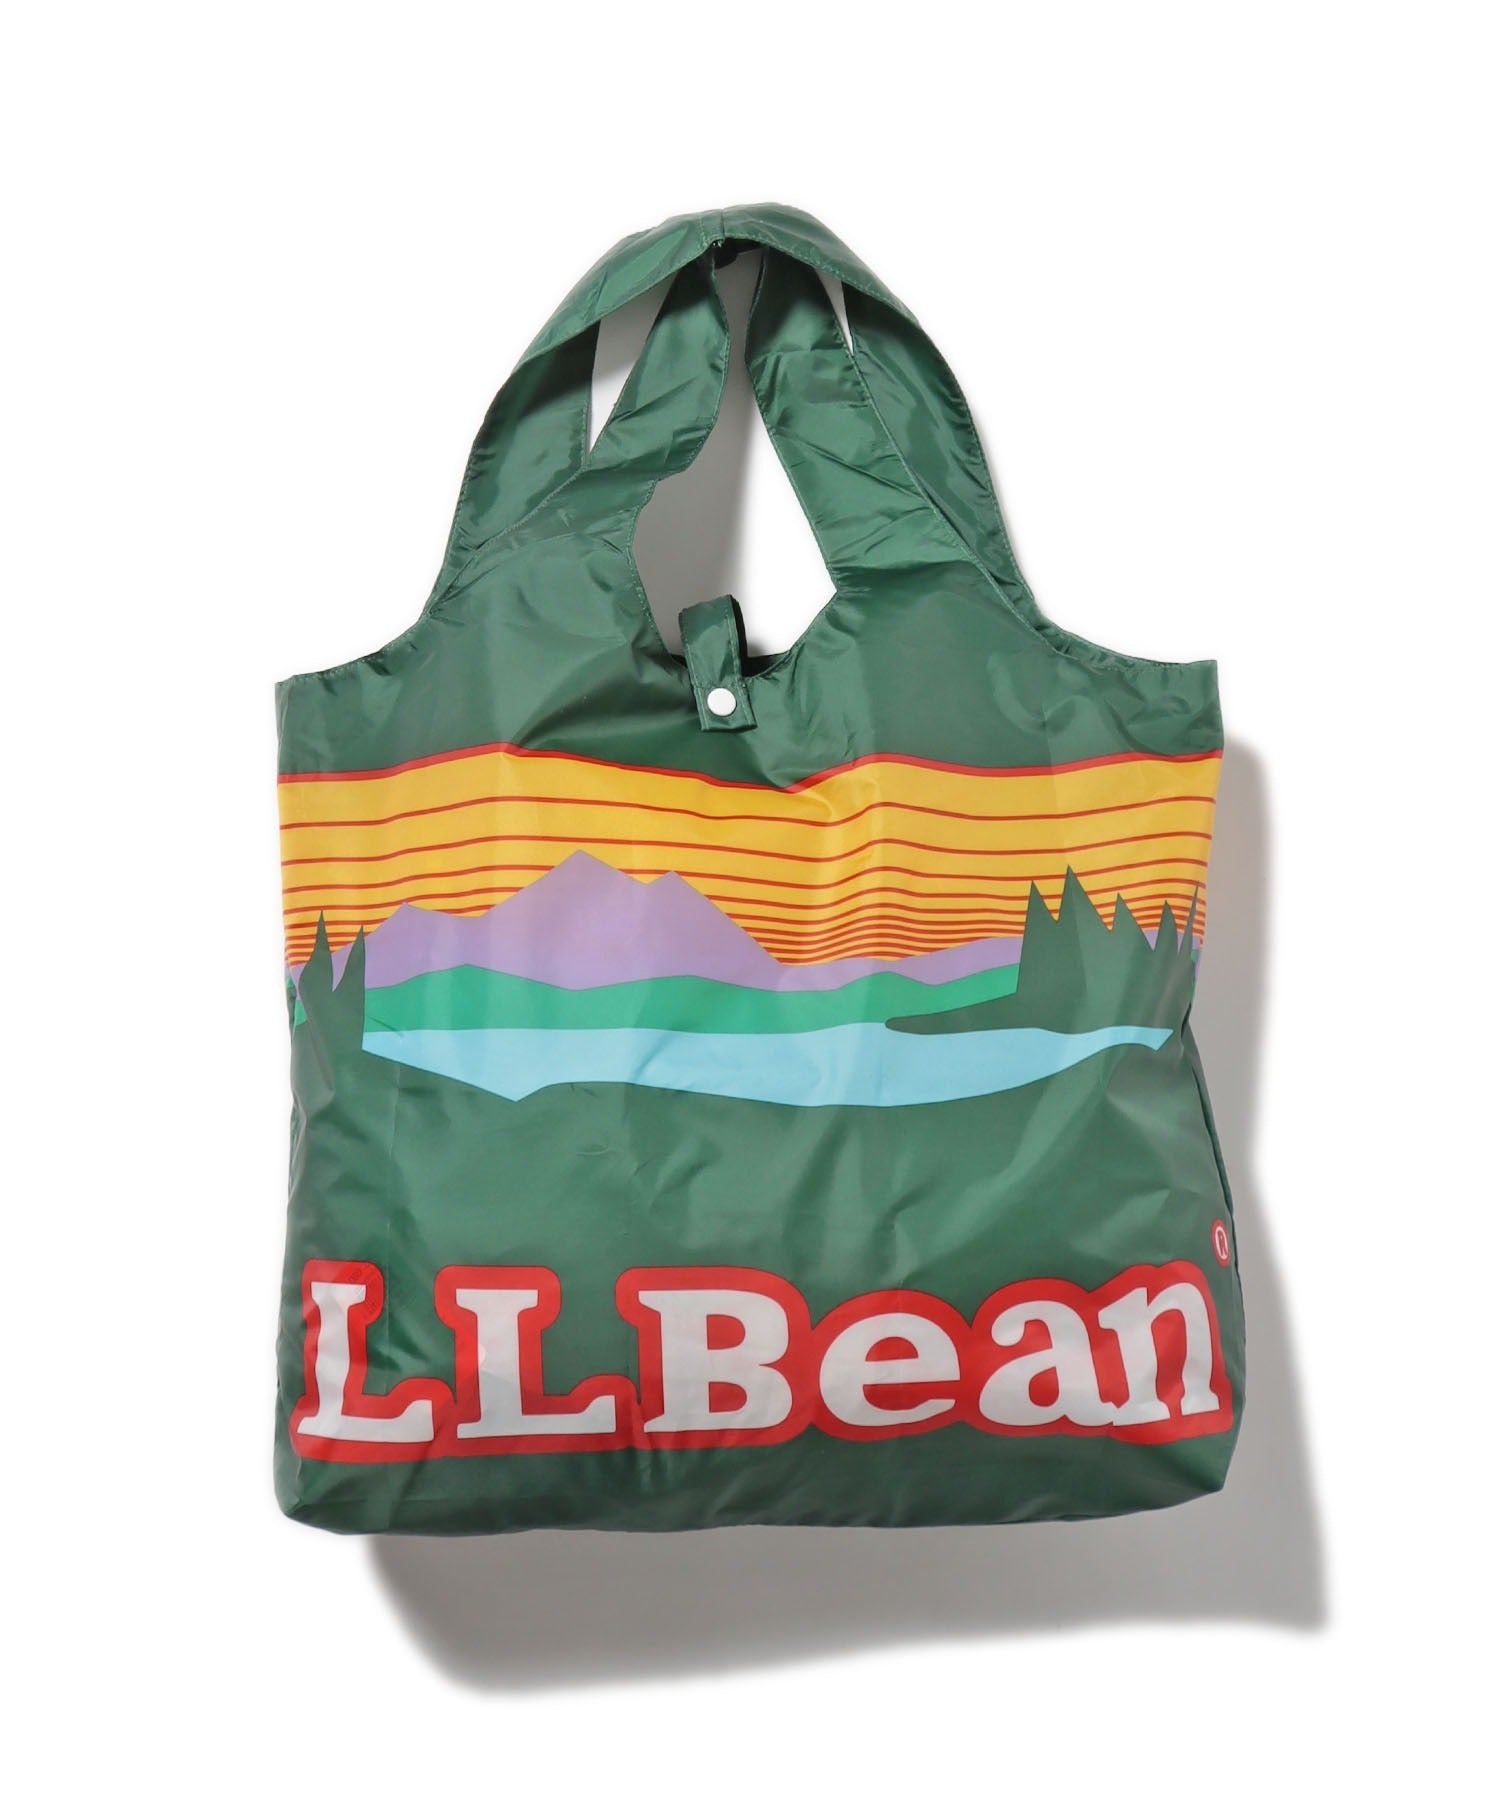 L.L.Bean/エル・エル・ビーン カタディン フォールディング バッグ